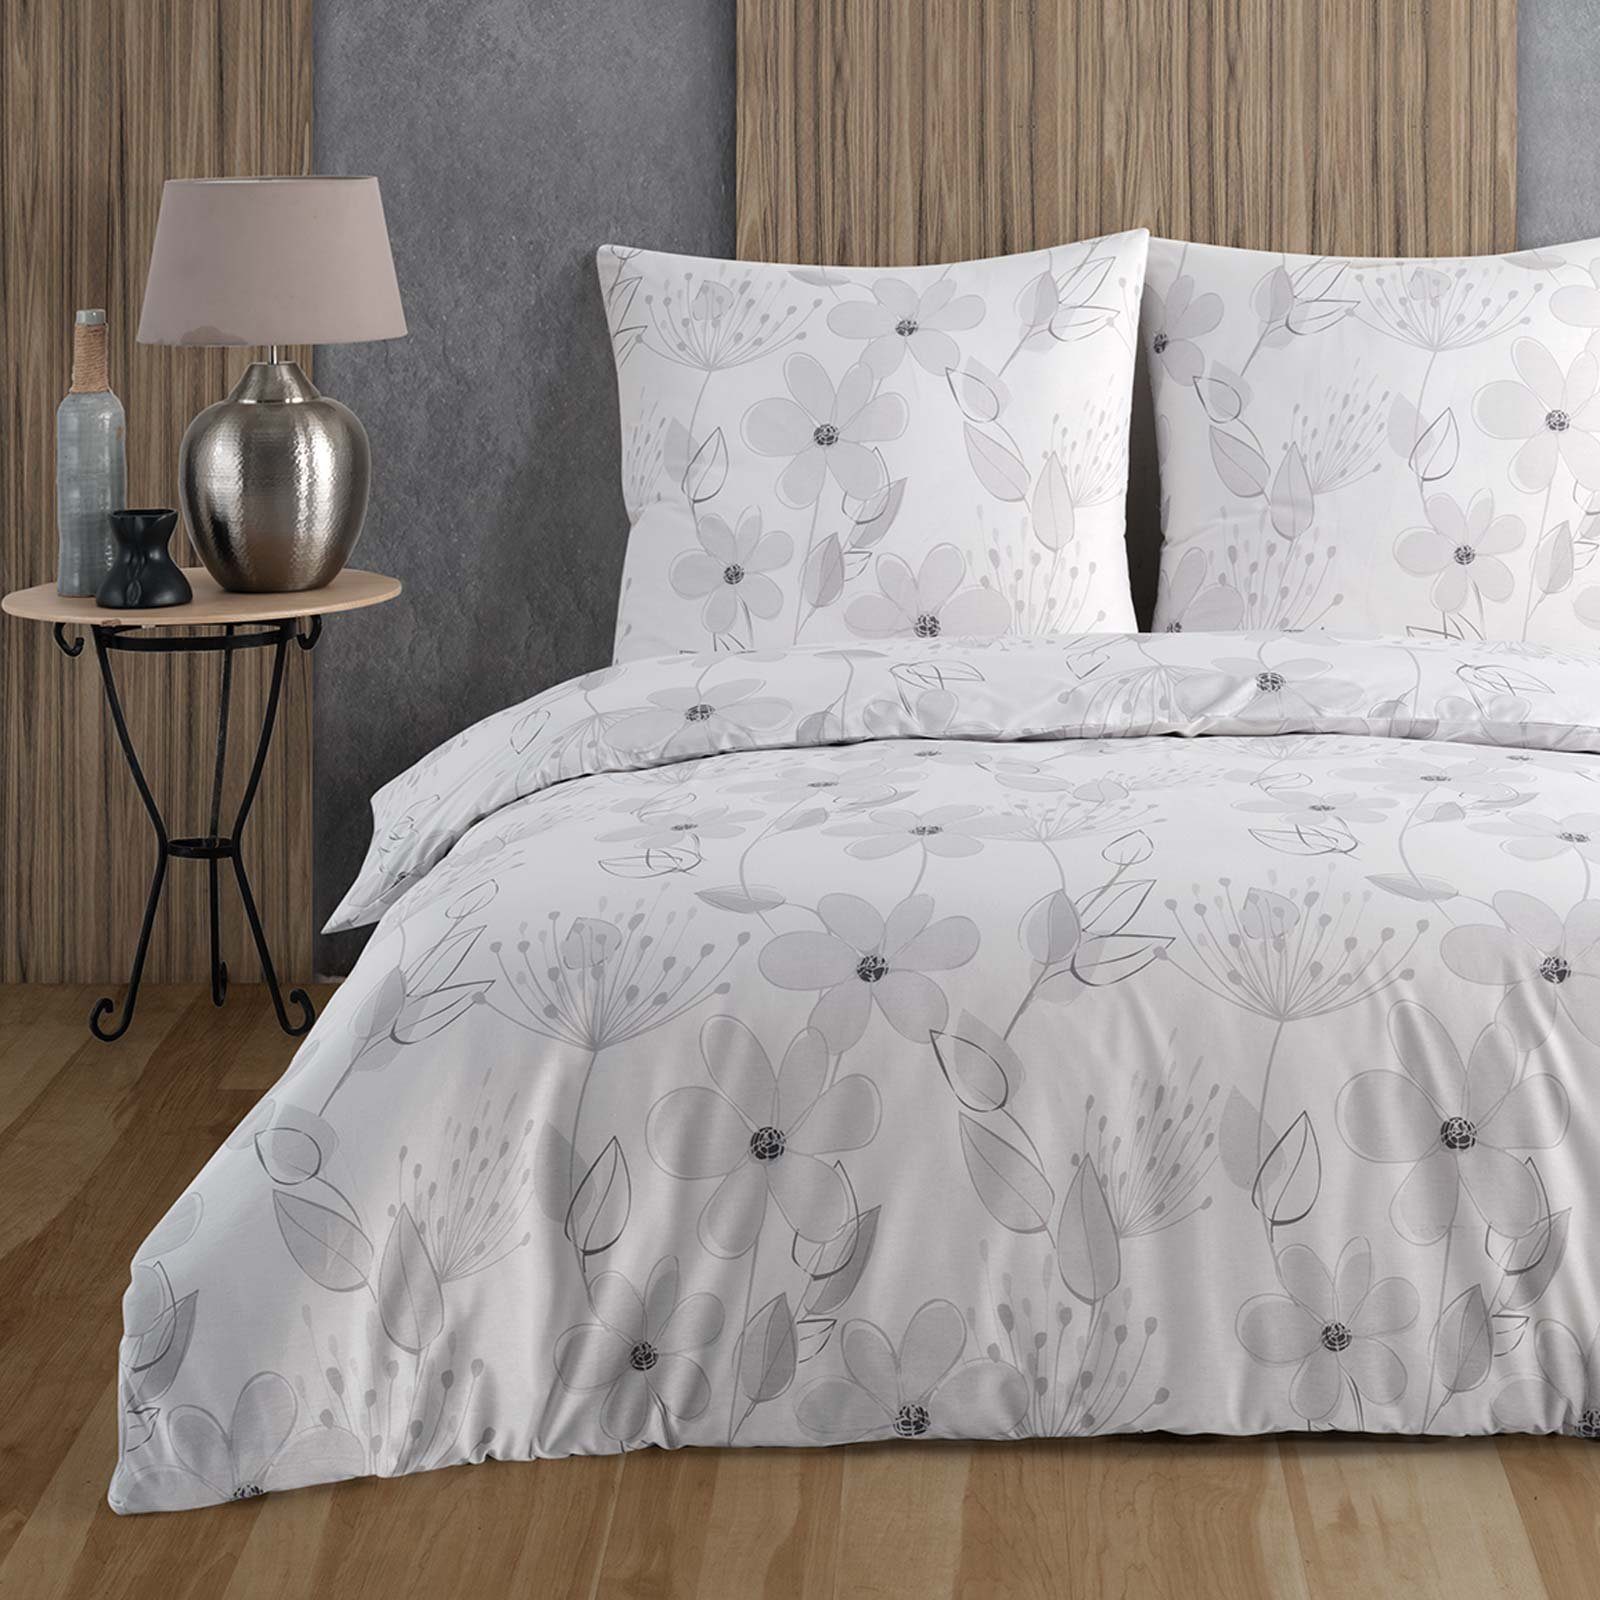 Bettwäsche, Buymax, Renforce: 100% Baumwolle, 3 teilig, 200x220 cm mit Reißverschluss Bettbezug-Set geblümt Blumen, Weiß Grau